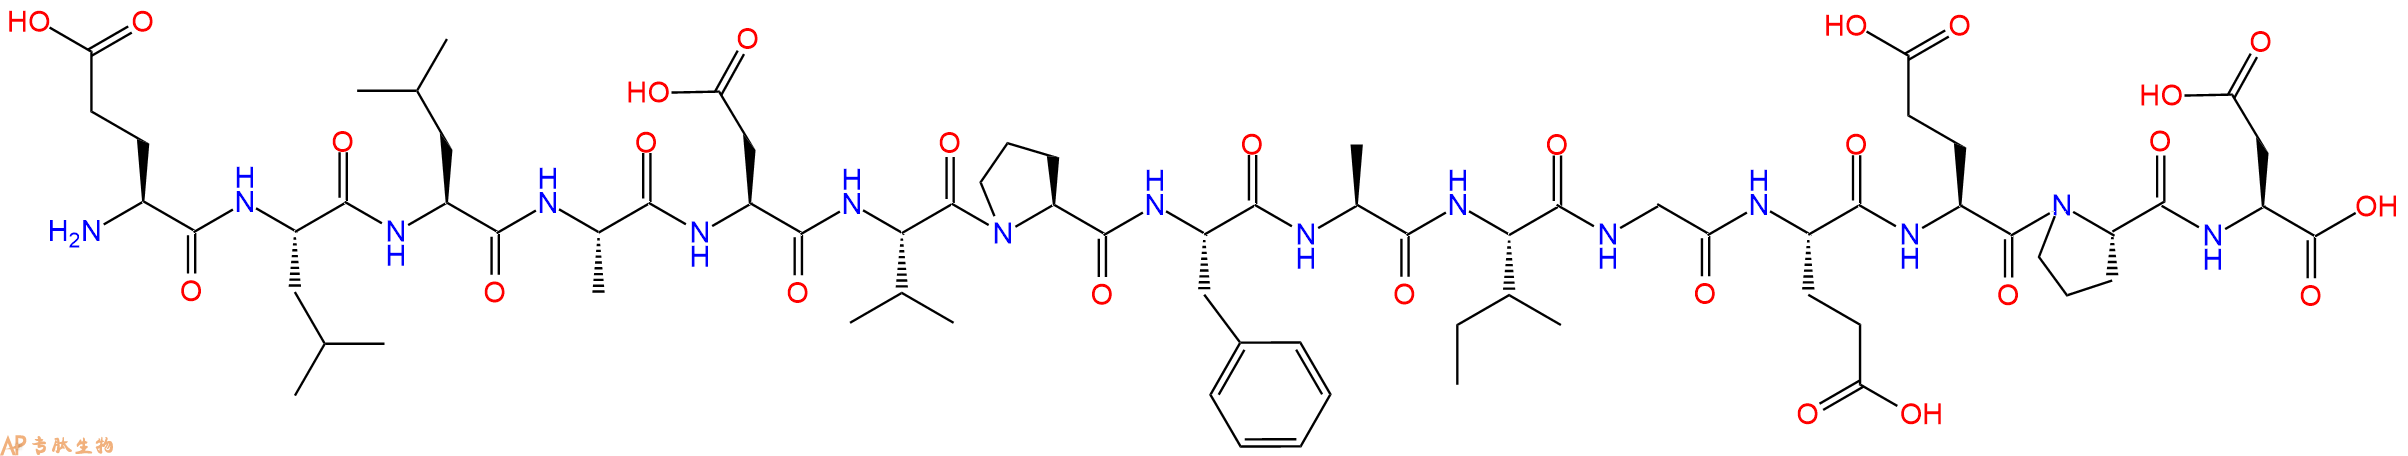 多肽ELLADVPFAIGEEPD的参数和合成路线|三字母为Glu-Leu-Leu-Ala-Asp-